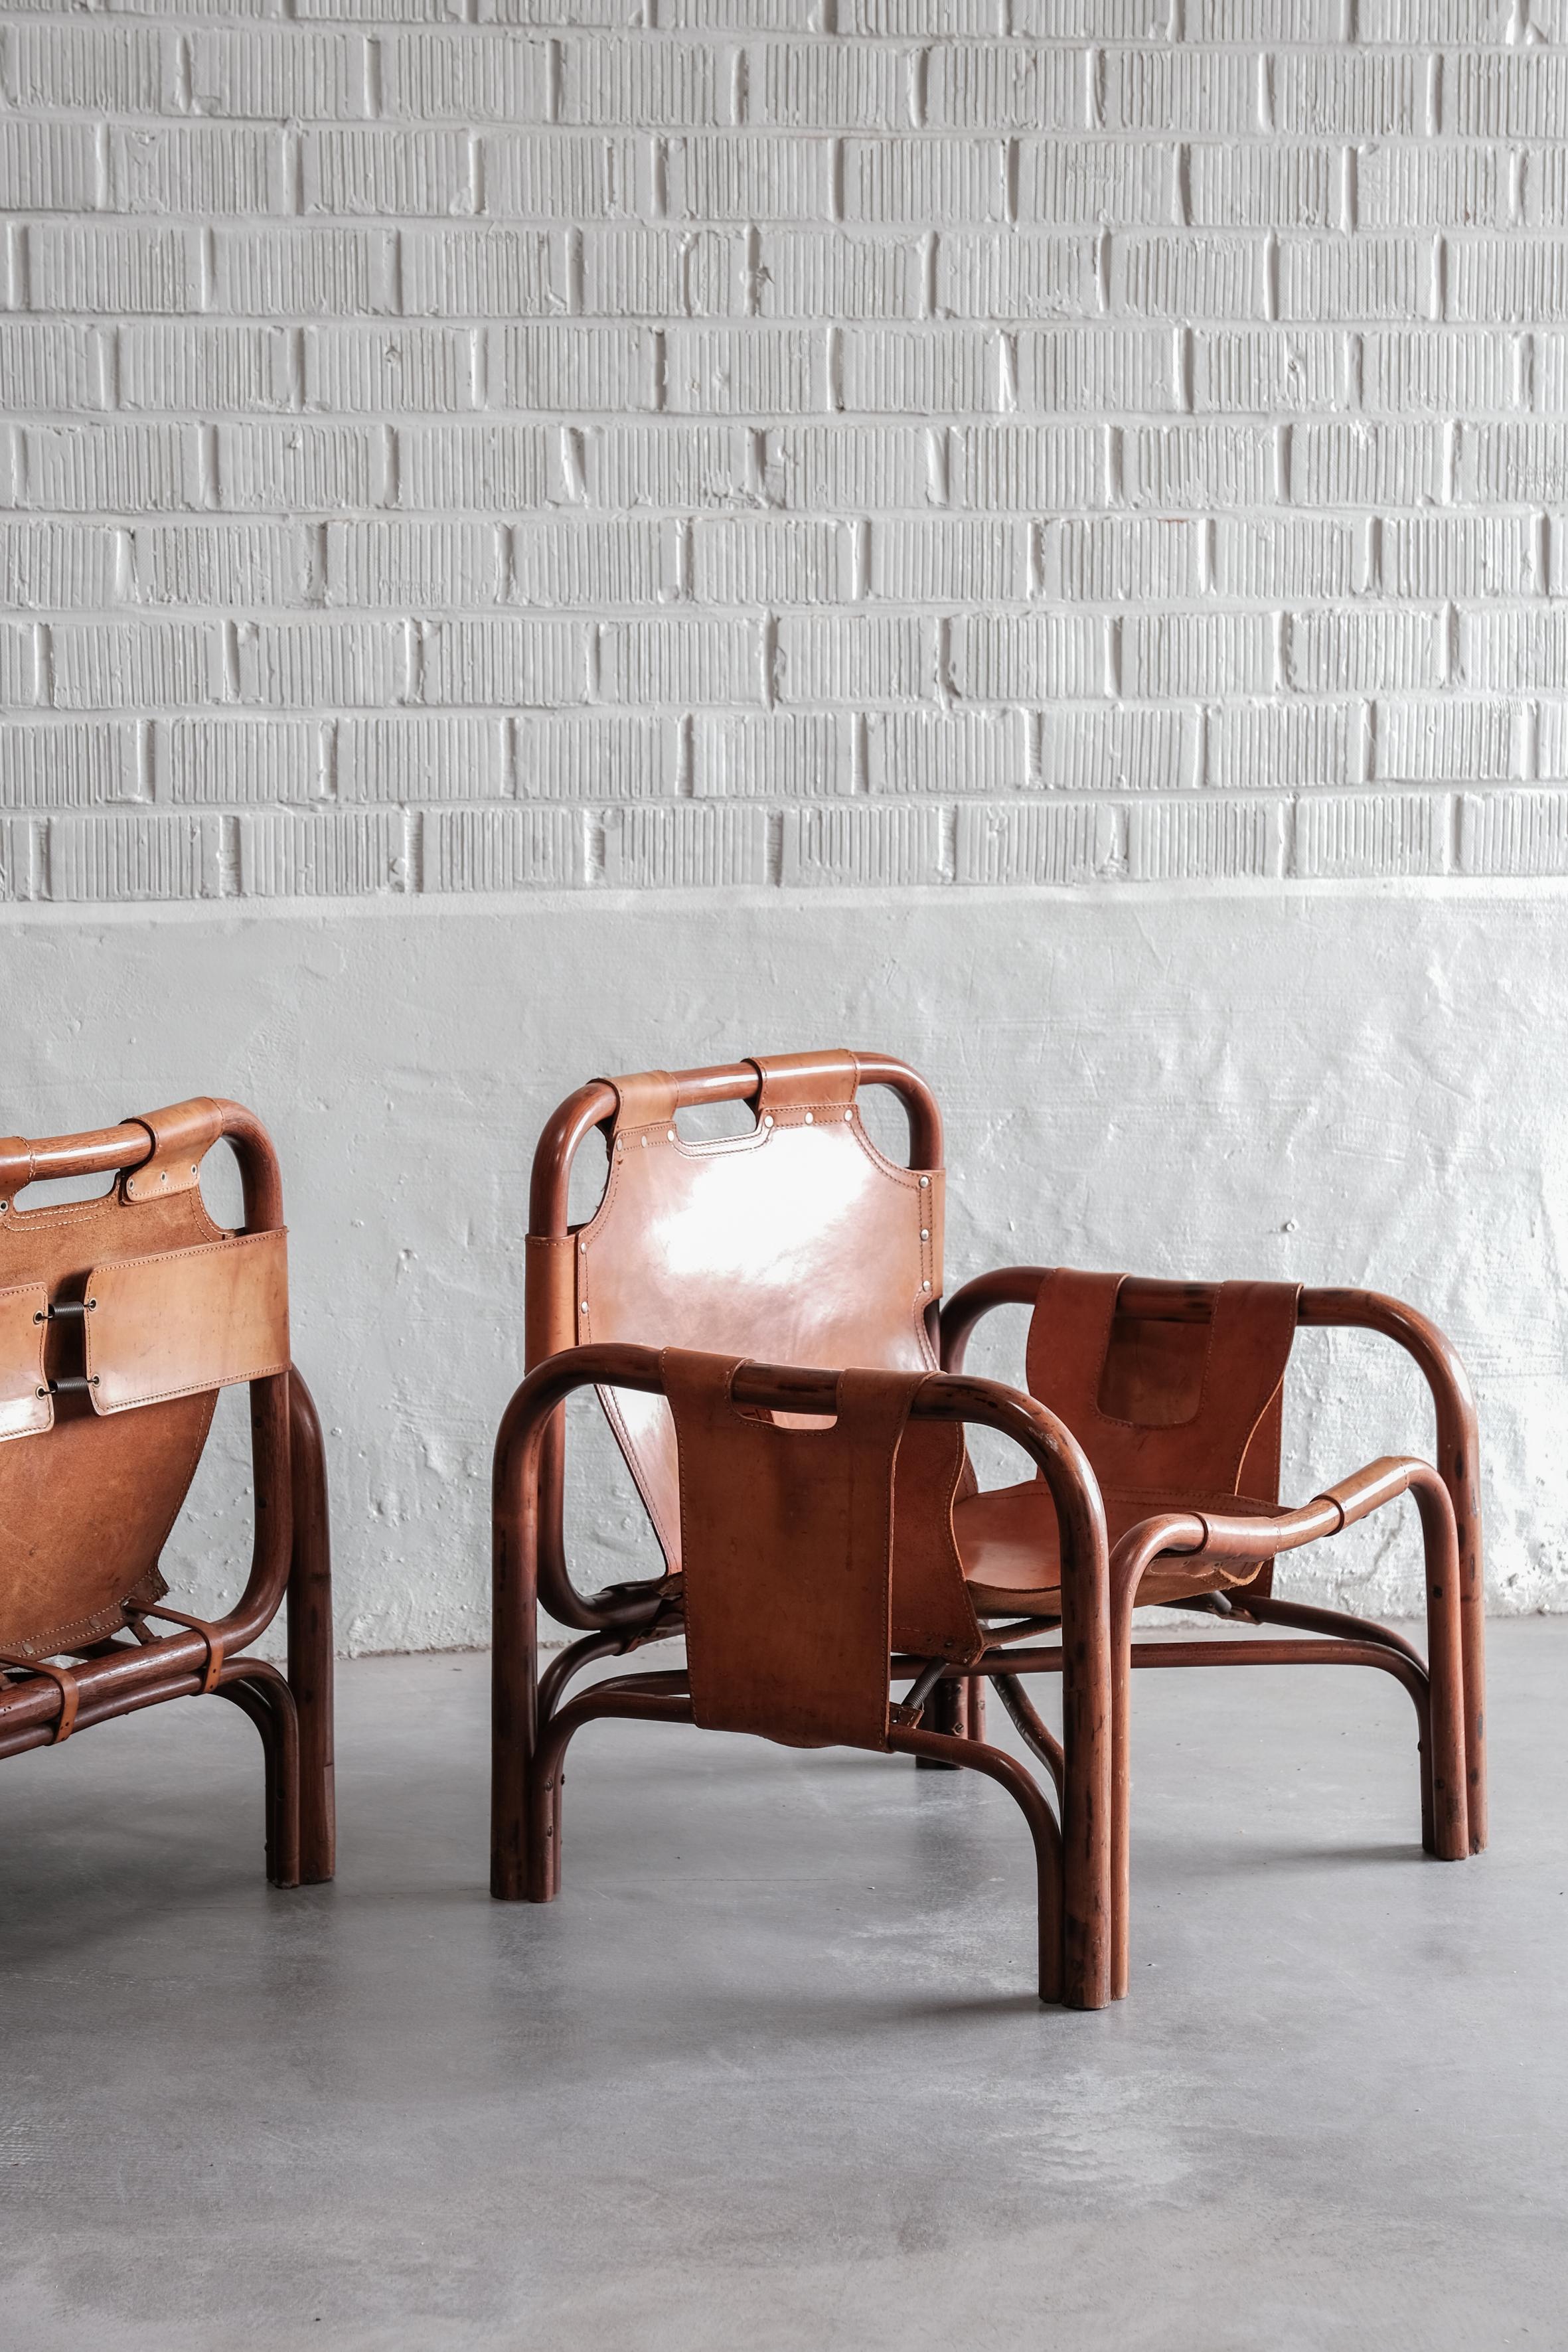 Superbe paire en bambou et cuir conçue par Tito Agnoli dans les années 60. 

Les chaises sont en bon état vintage avec quelques petites taches et patine sur le cuir. 